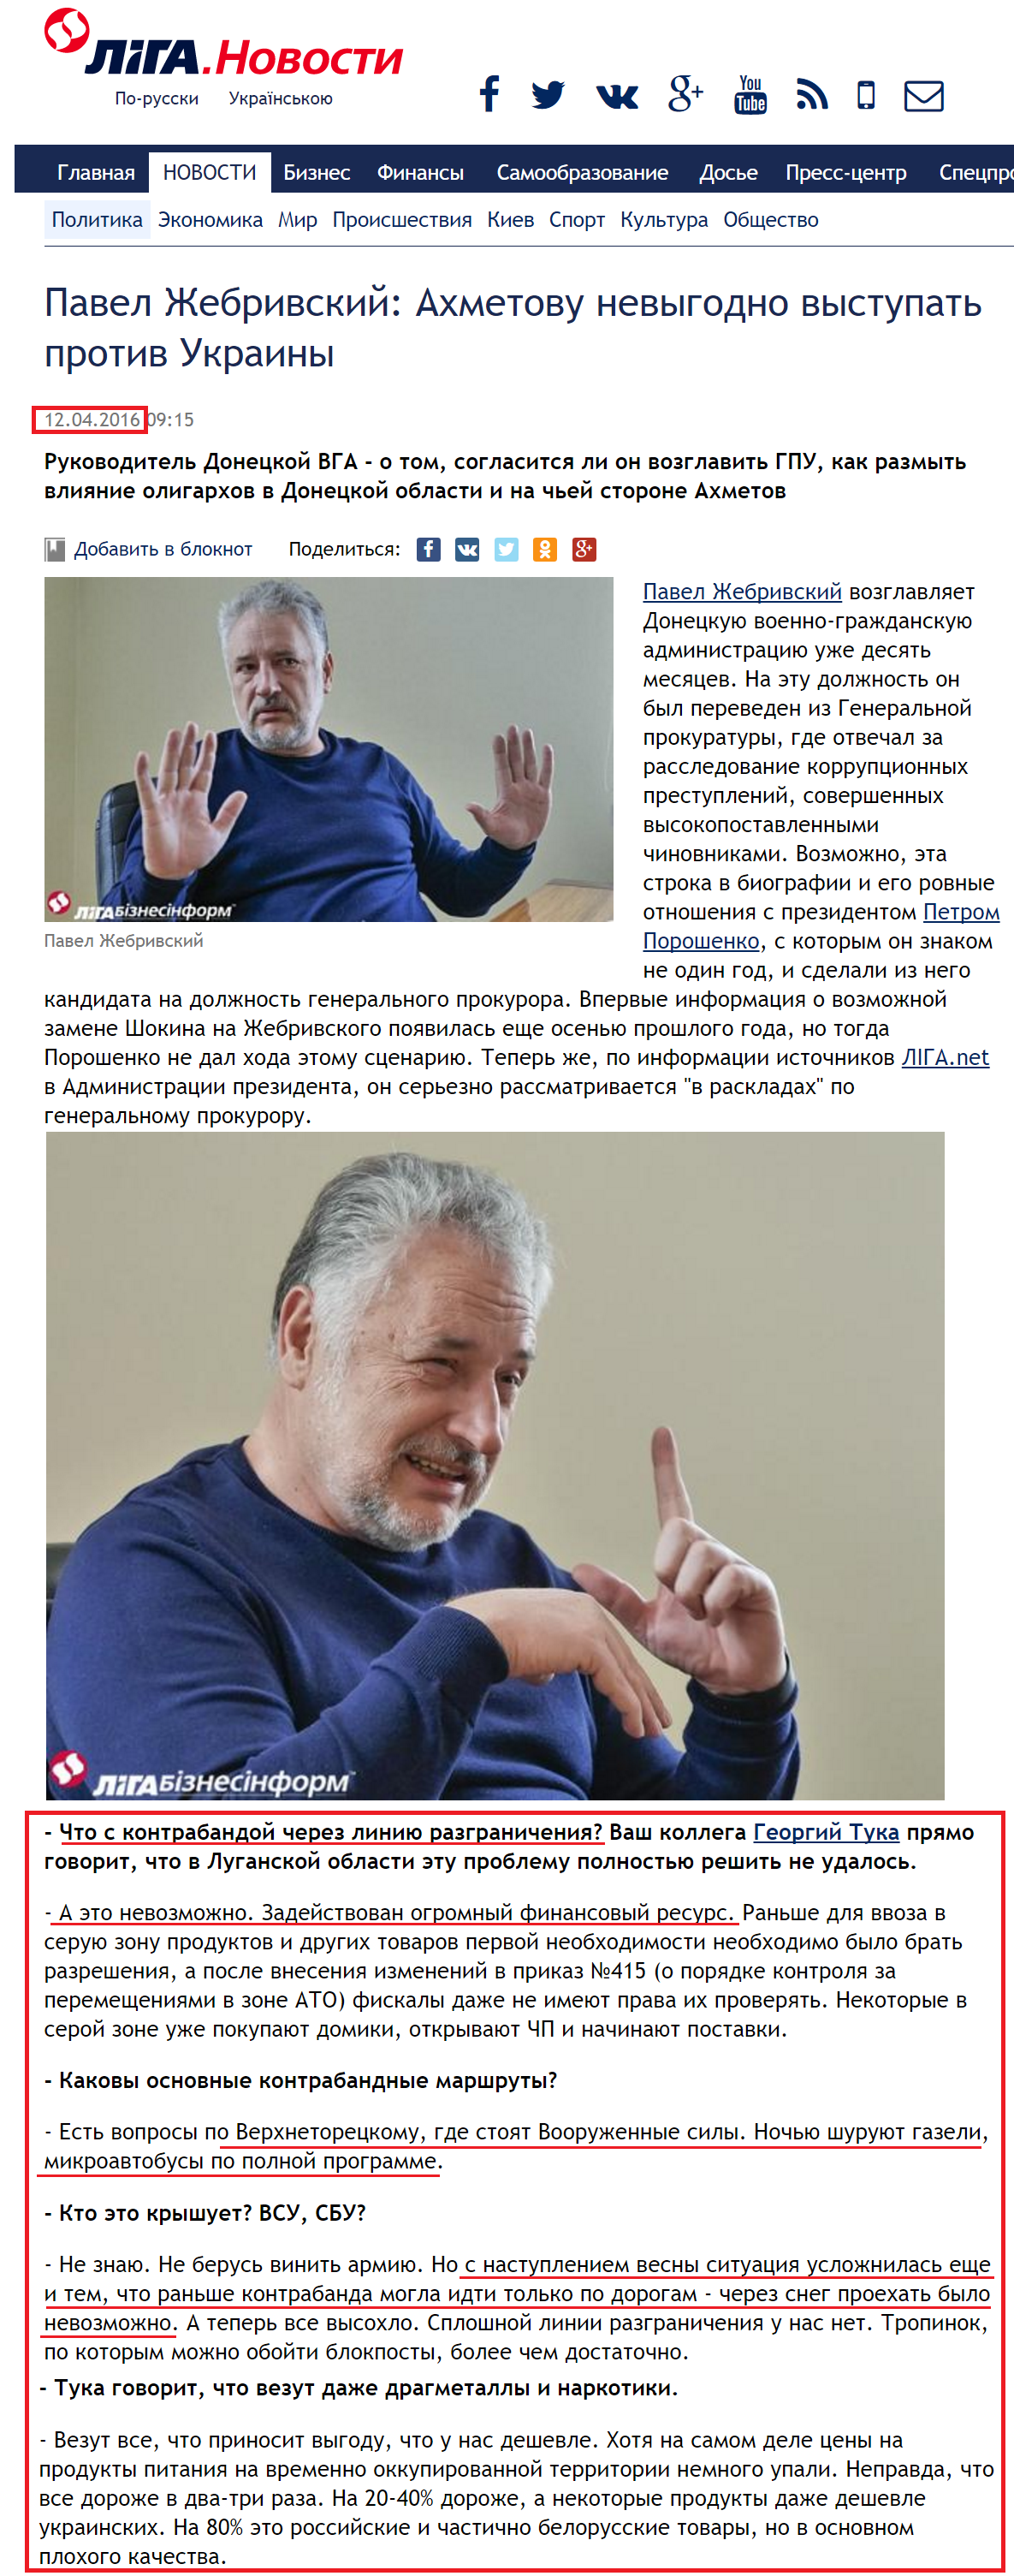 http://news.liga.net/interview/politics/10075212-pavel_zhebrivskiy_akhmetovu_ne_vygodno_vystupat_protiv_ukrainy.htm